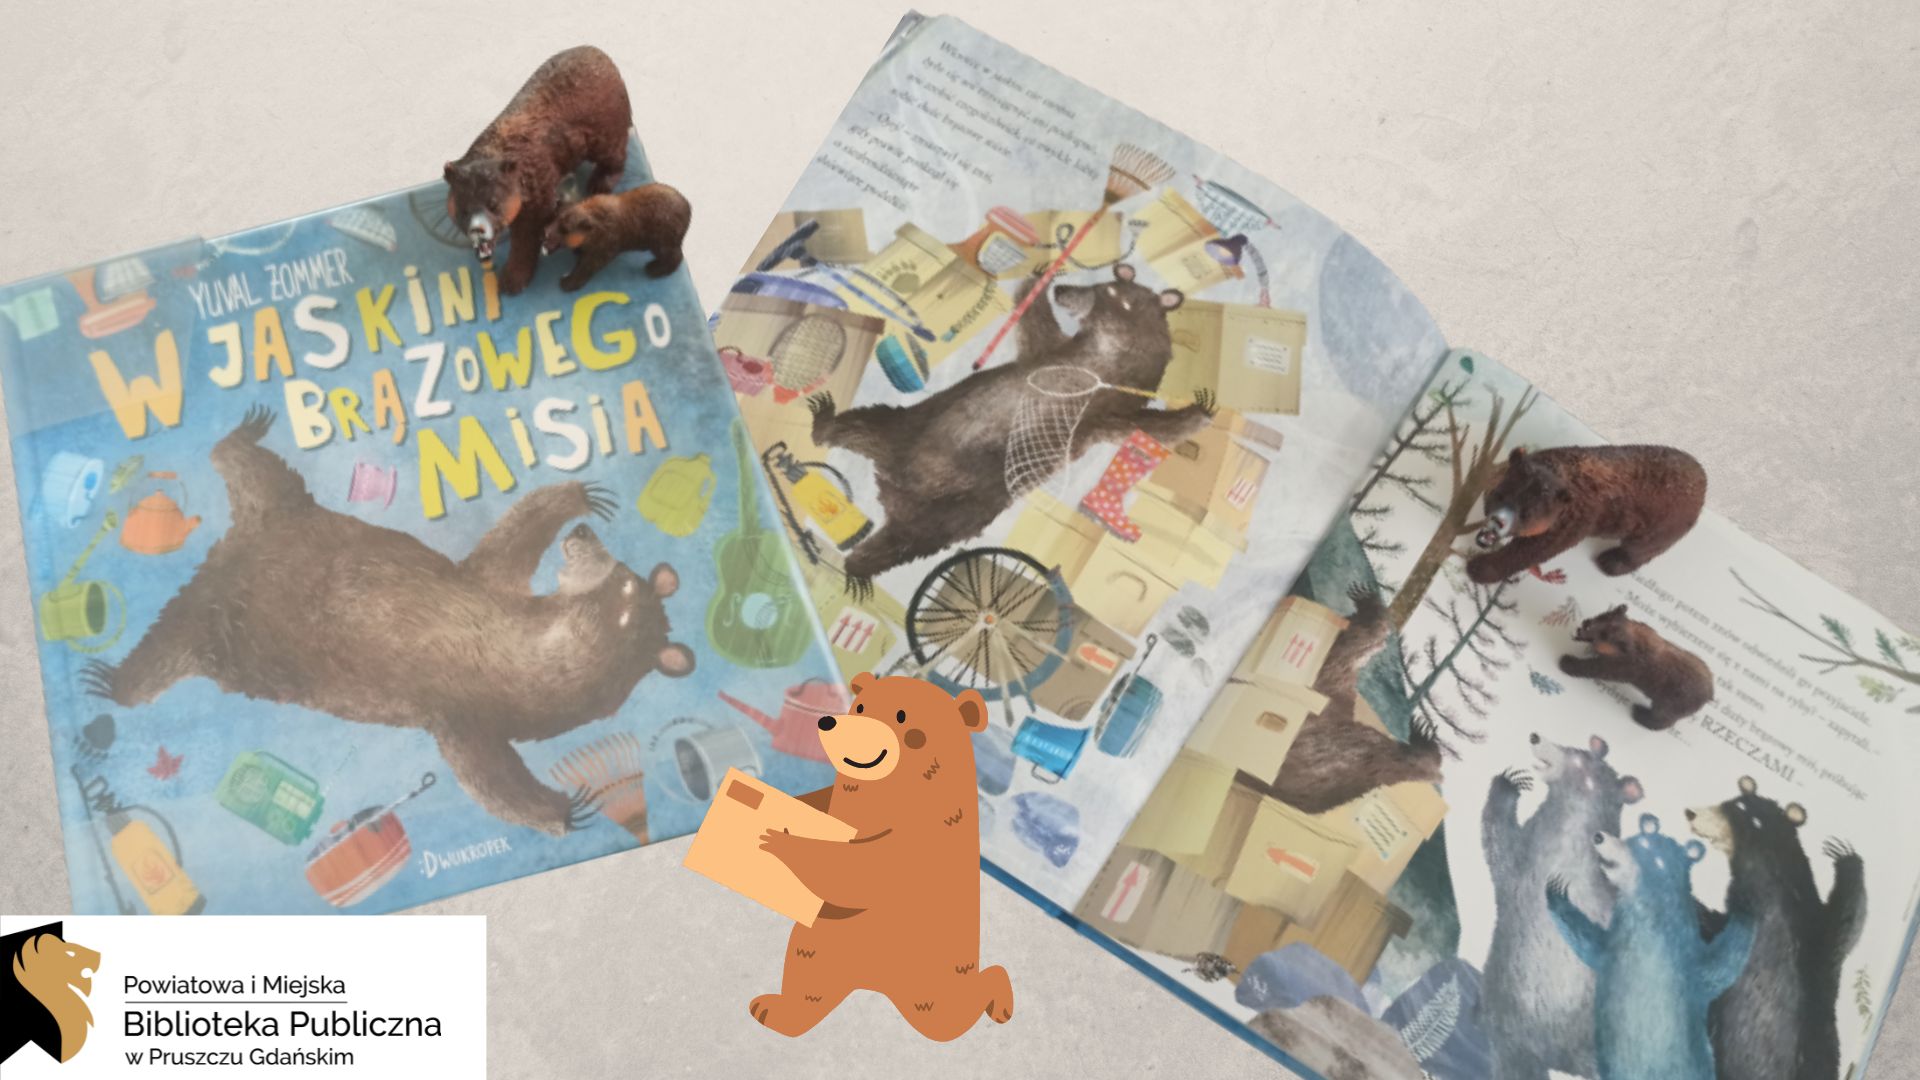 Zamknięta książka pt. „W jaskini brązowego misia” leży obok otwartej książki. Na okładce, jak też na otwartych stronach, są postaci niedźwiedzi wśród ogromnej ilości rzeczy. Na książkach stoją gumowe figurki niedźwiedzi. Pomiędzy książkami umieszczony jest animacja niedźwiedzia niosącego paczkę.